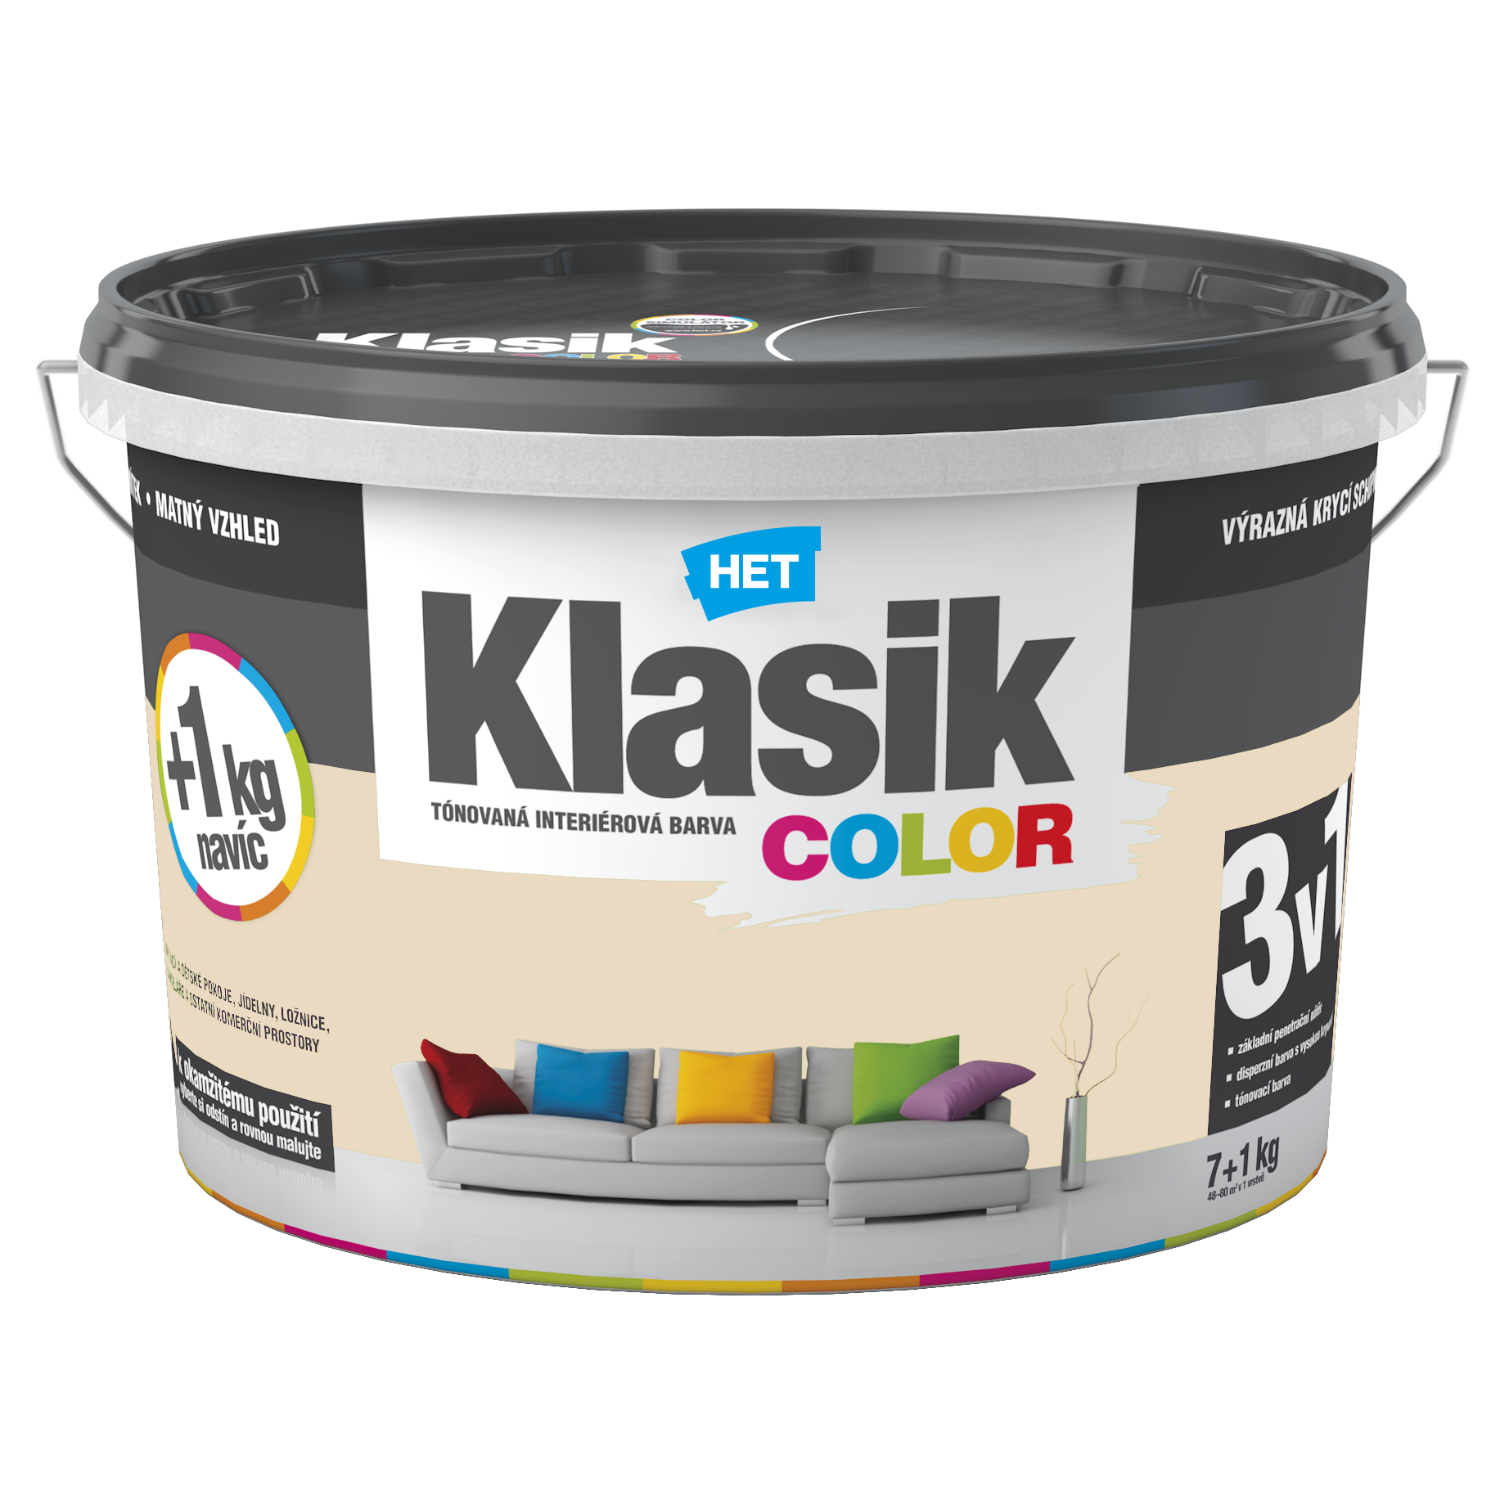 HET Klasik COLOR tónovaná interiérová akrylátová disperzná oteruvzdorná farba 7 kg + 1 kg zdarma, KC0167 - šedý betónový